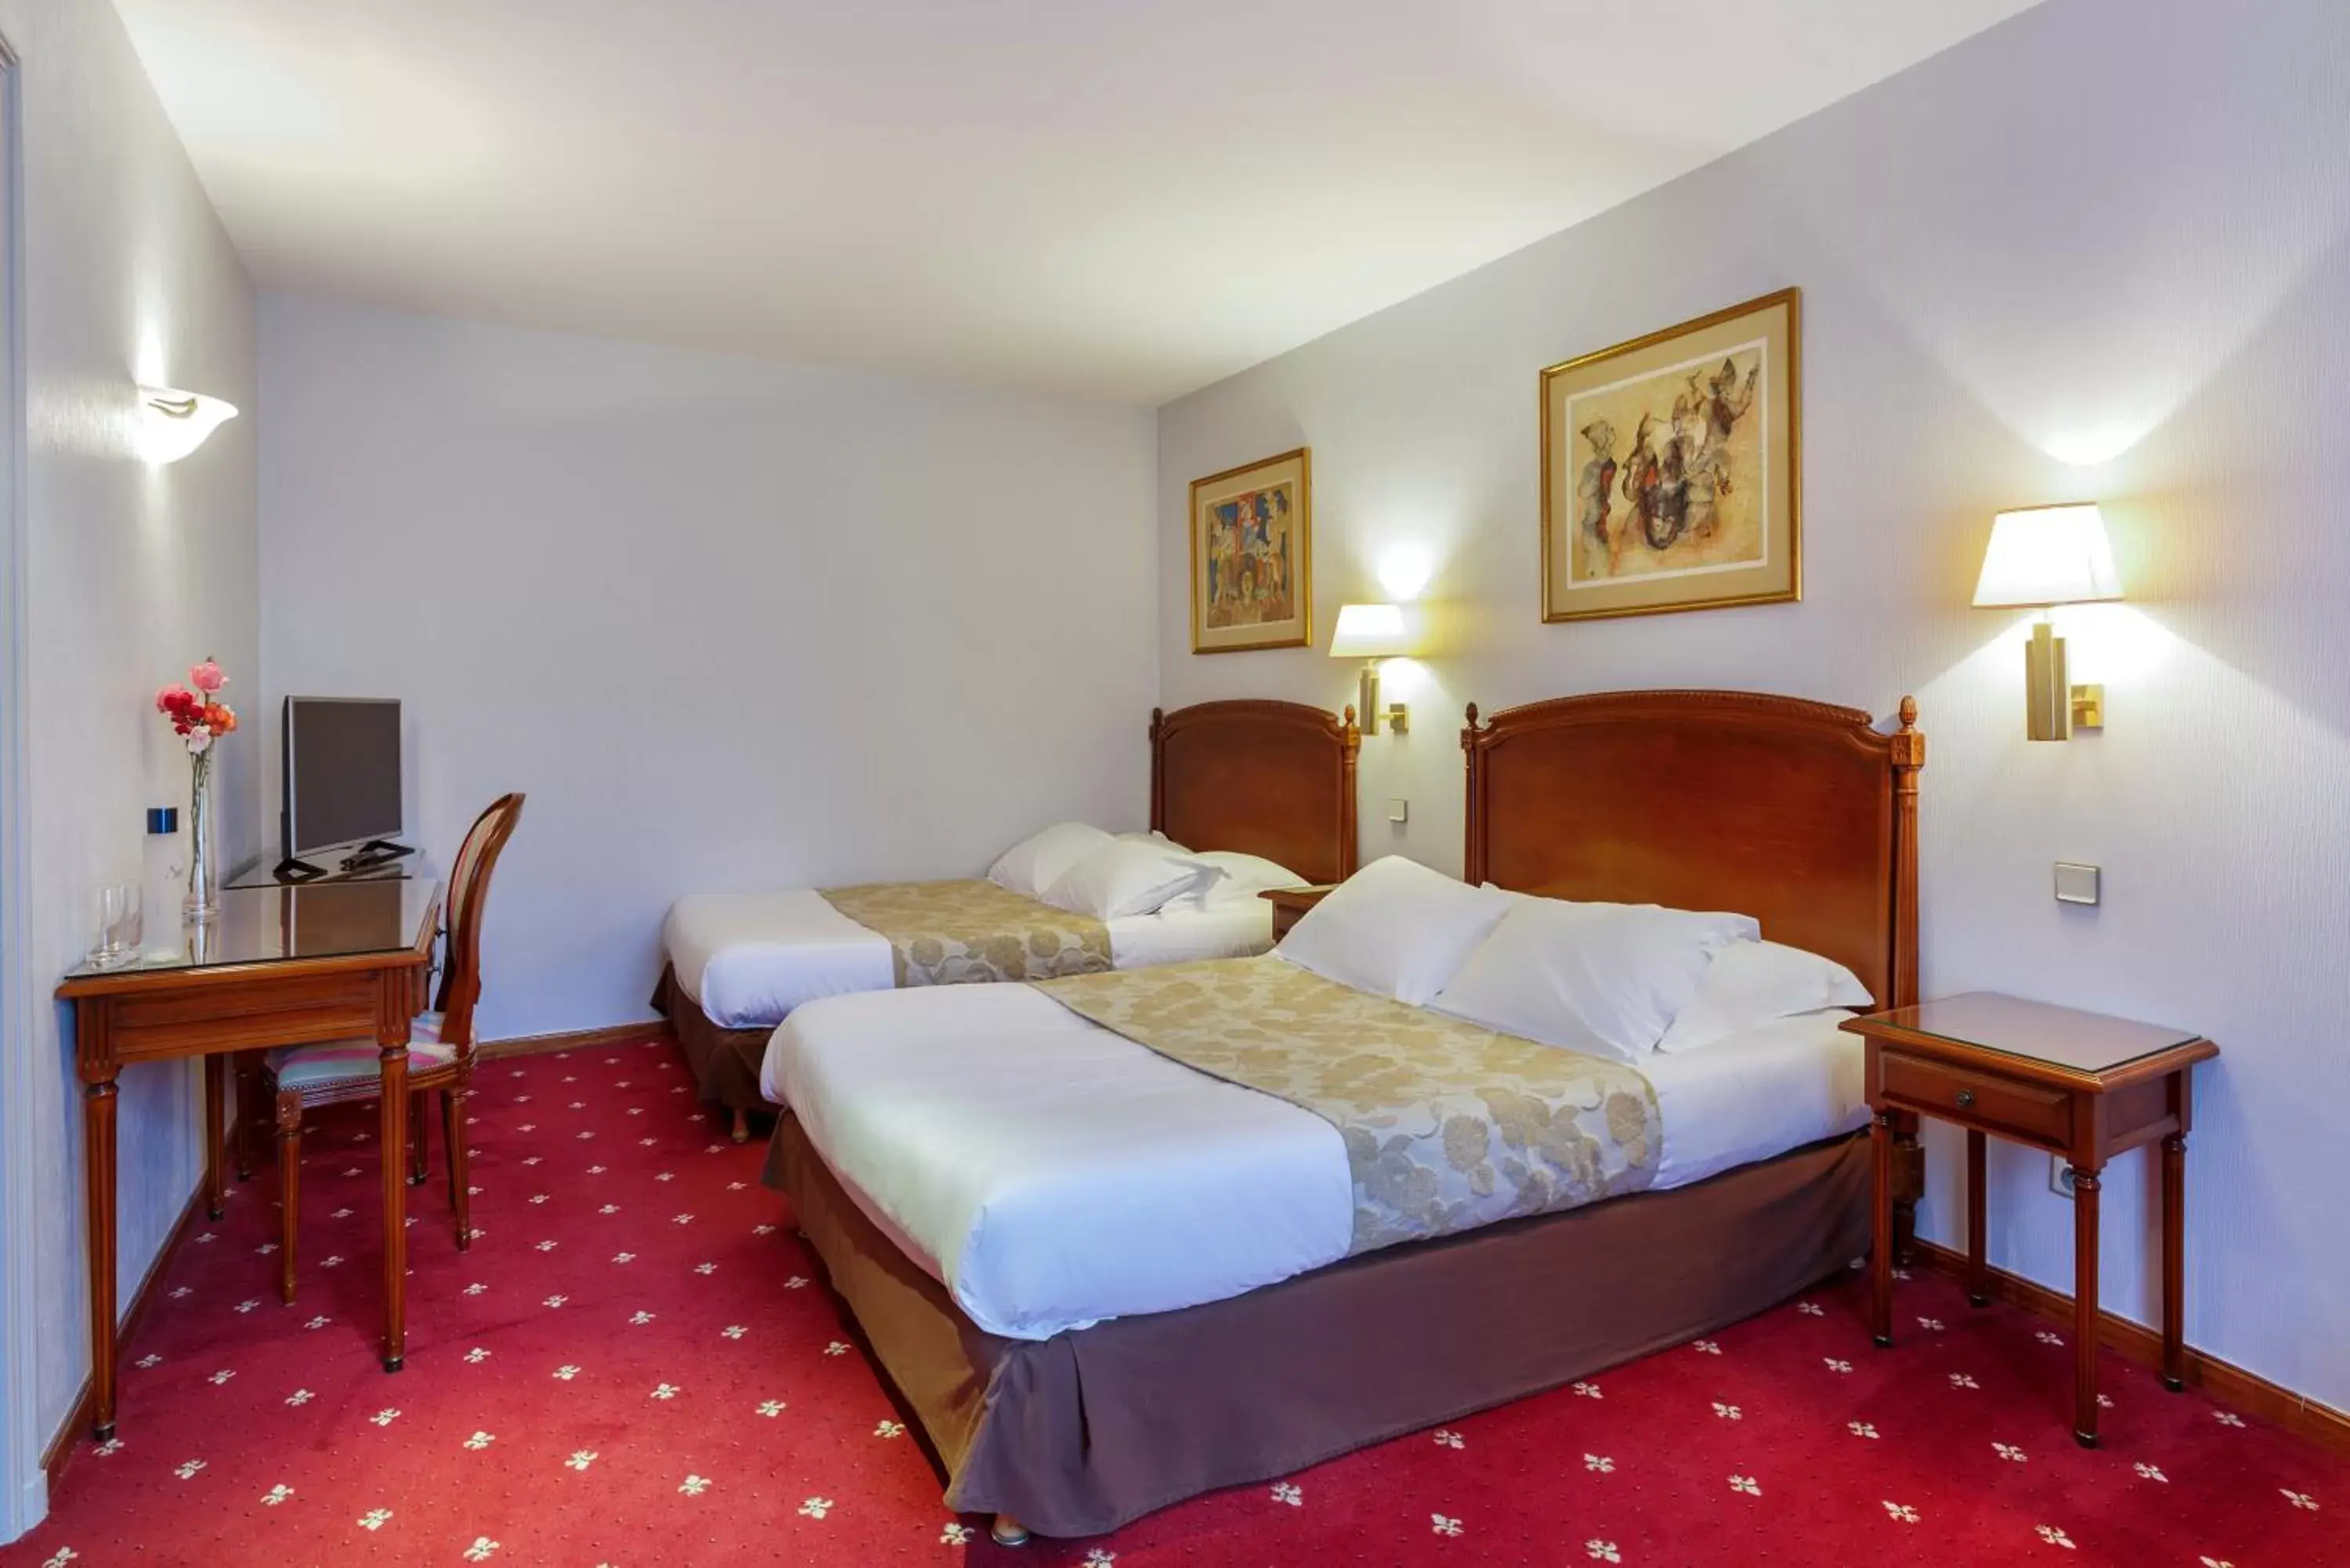 Bedroom in Château de Sancy